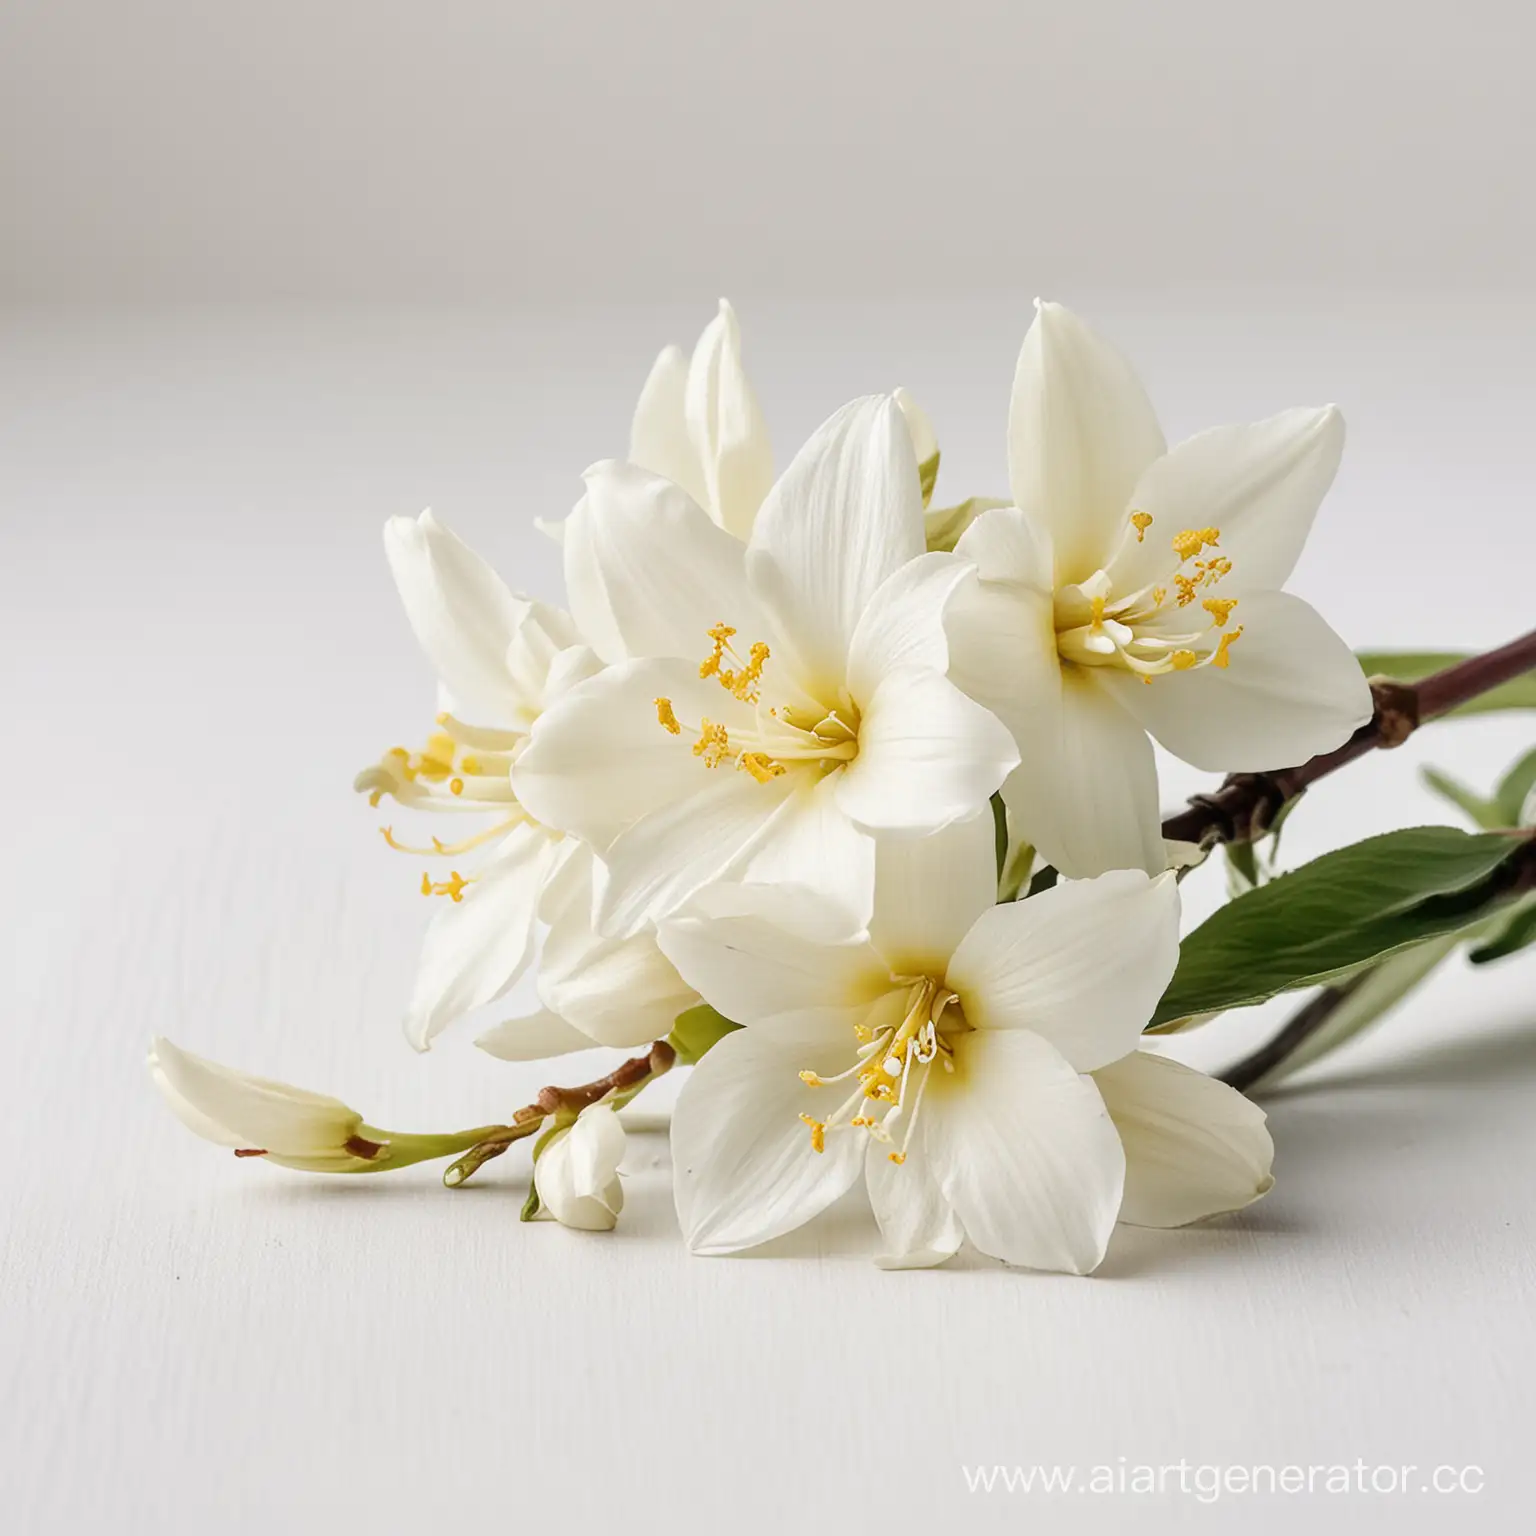 цветы ванили на белом фоне
